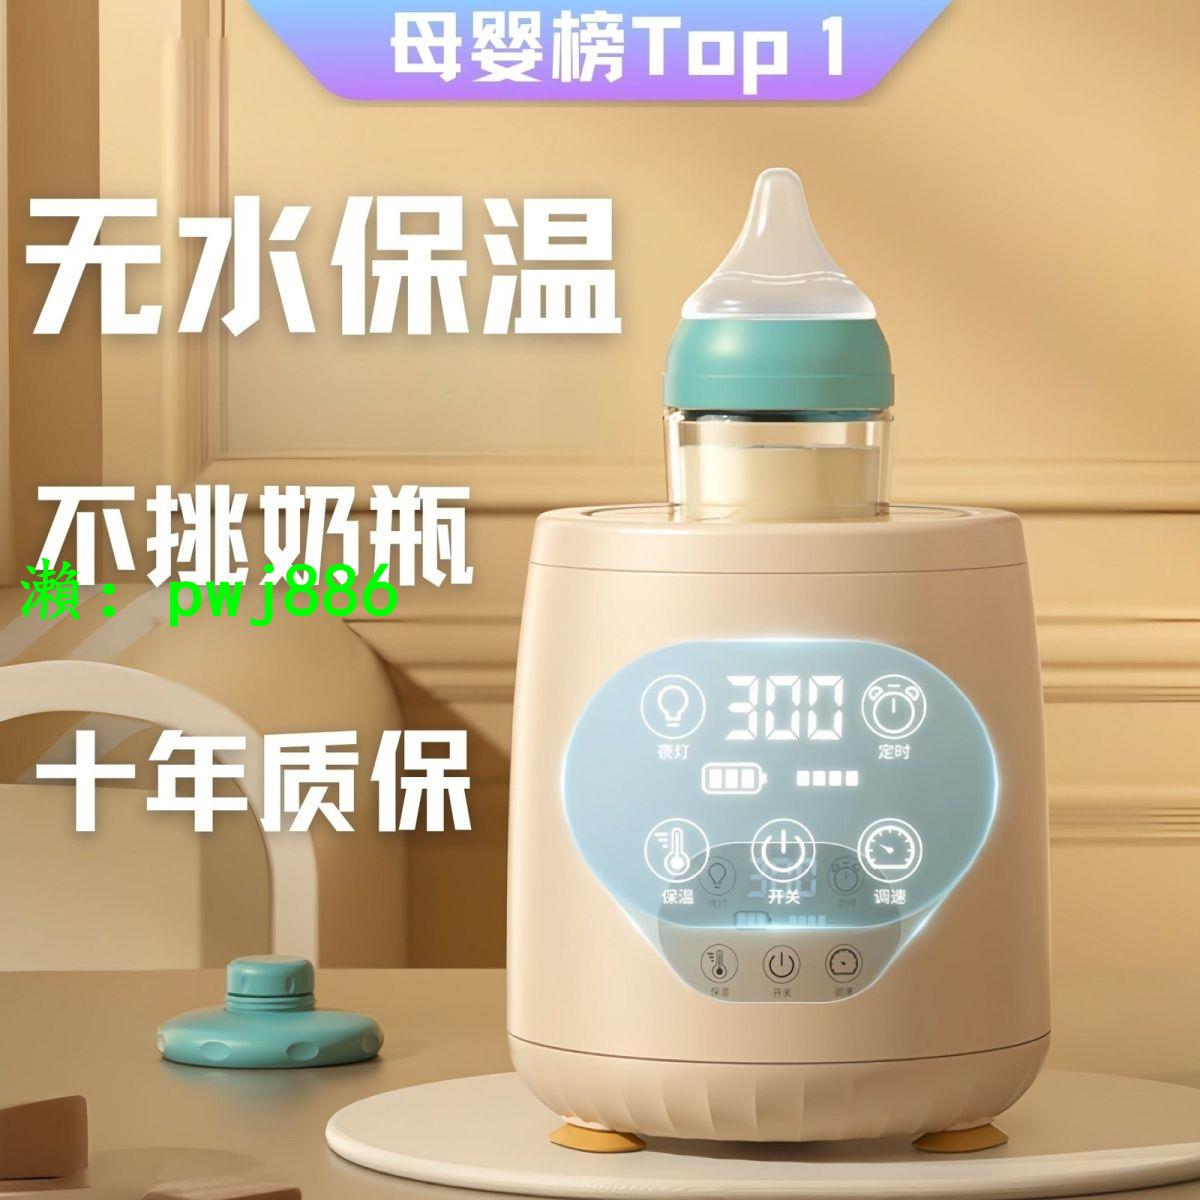 官方嚴選無線恒溫搖奶器全自動保溫夜燈便攜嬰兒嬰兒暖奶器智能